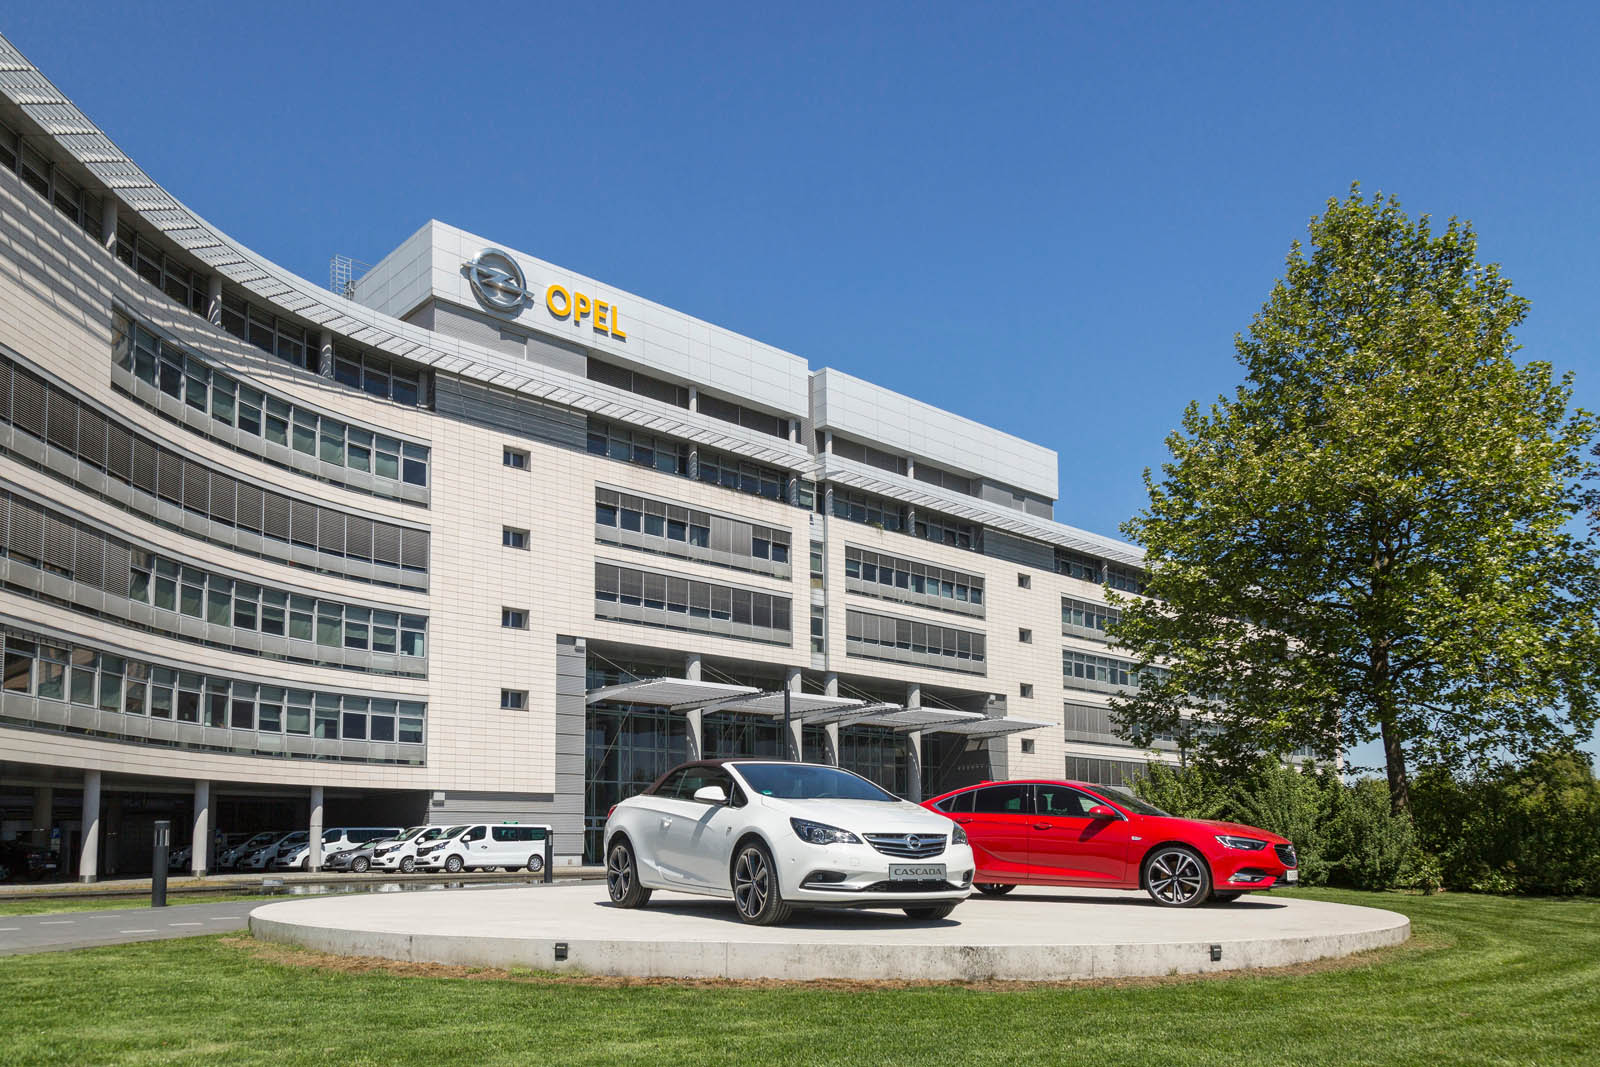 Berita, opel-psa-04: Resmi, Opel dan Vauxhall Sekarang Milik PSA Group